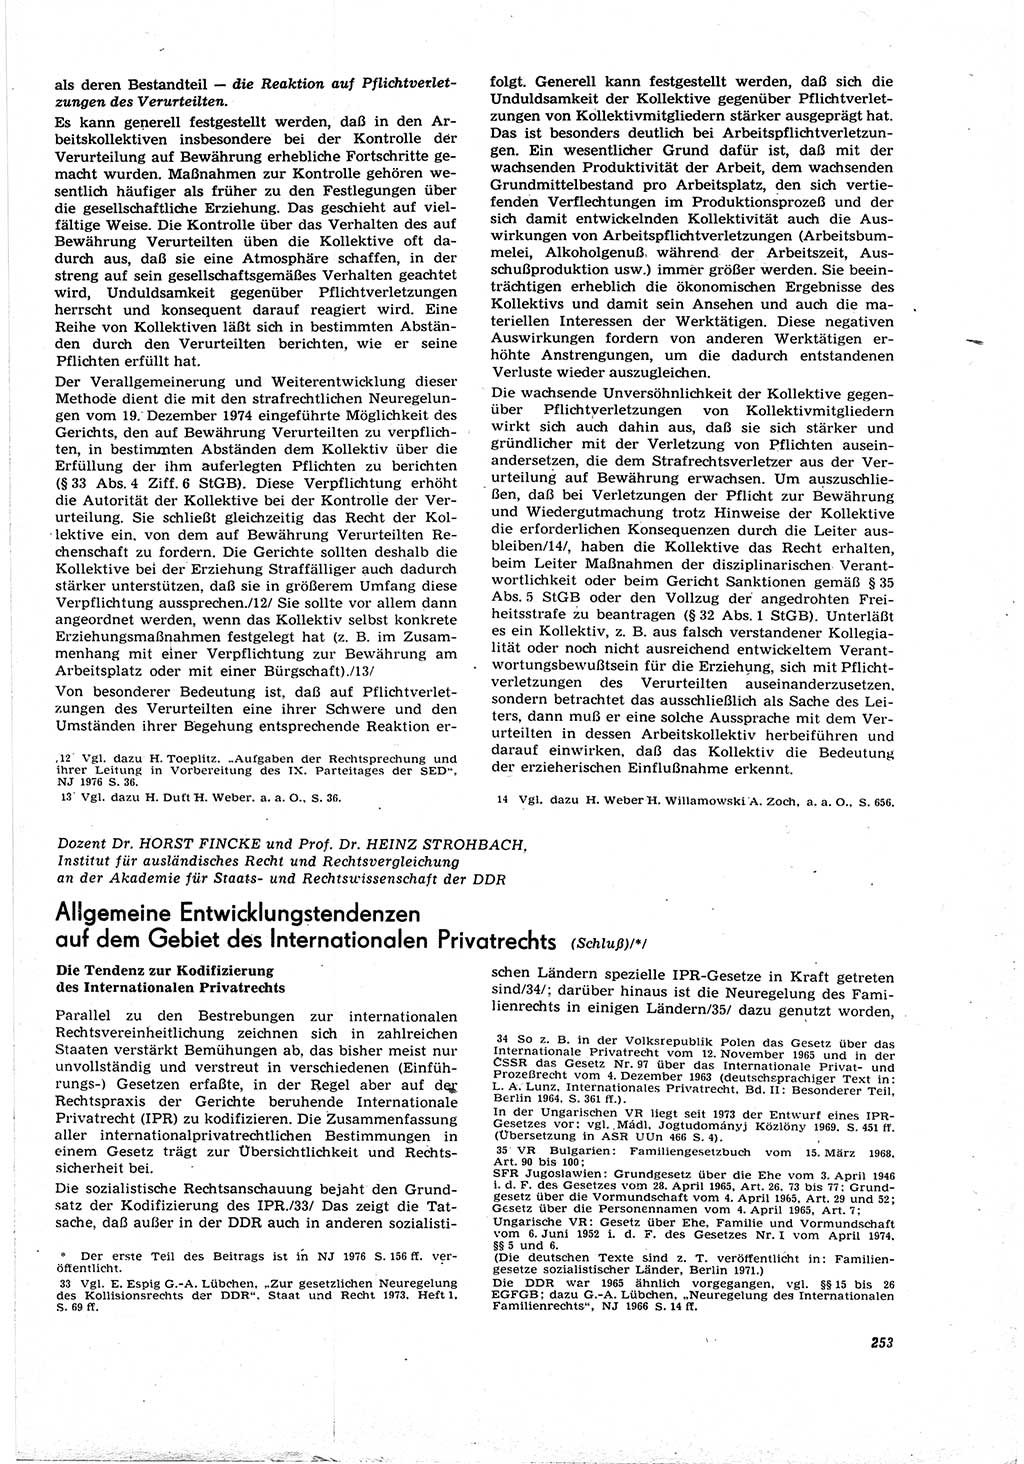 Neue Justiz (NJ), Zeitschrift für Recht und Rechtswissenschaft [Deutsche Demokratische Republik (DDR)], 30. Jahrgang 1976, Seite 253 (NJ DDR 1976, S. 253)